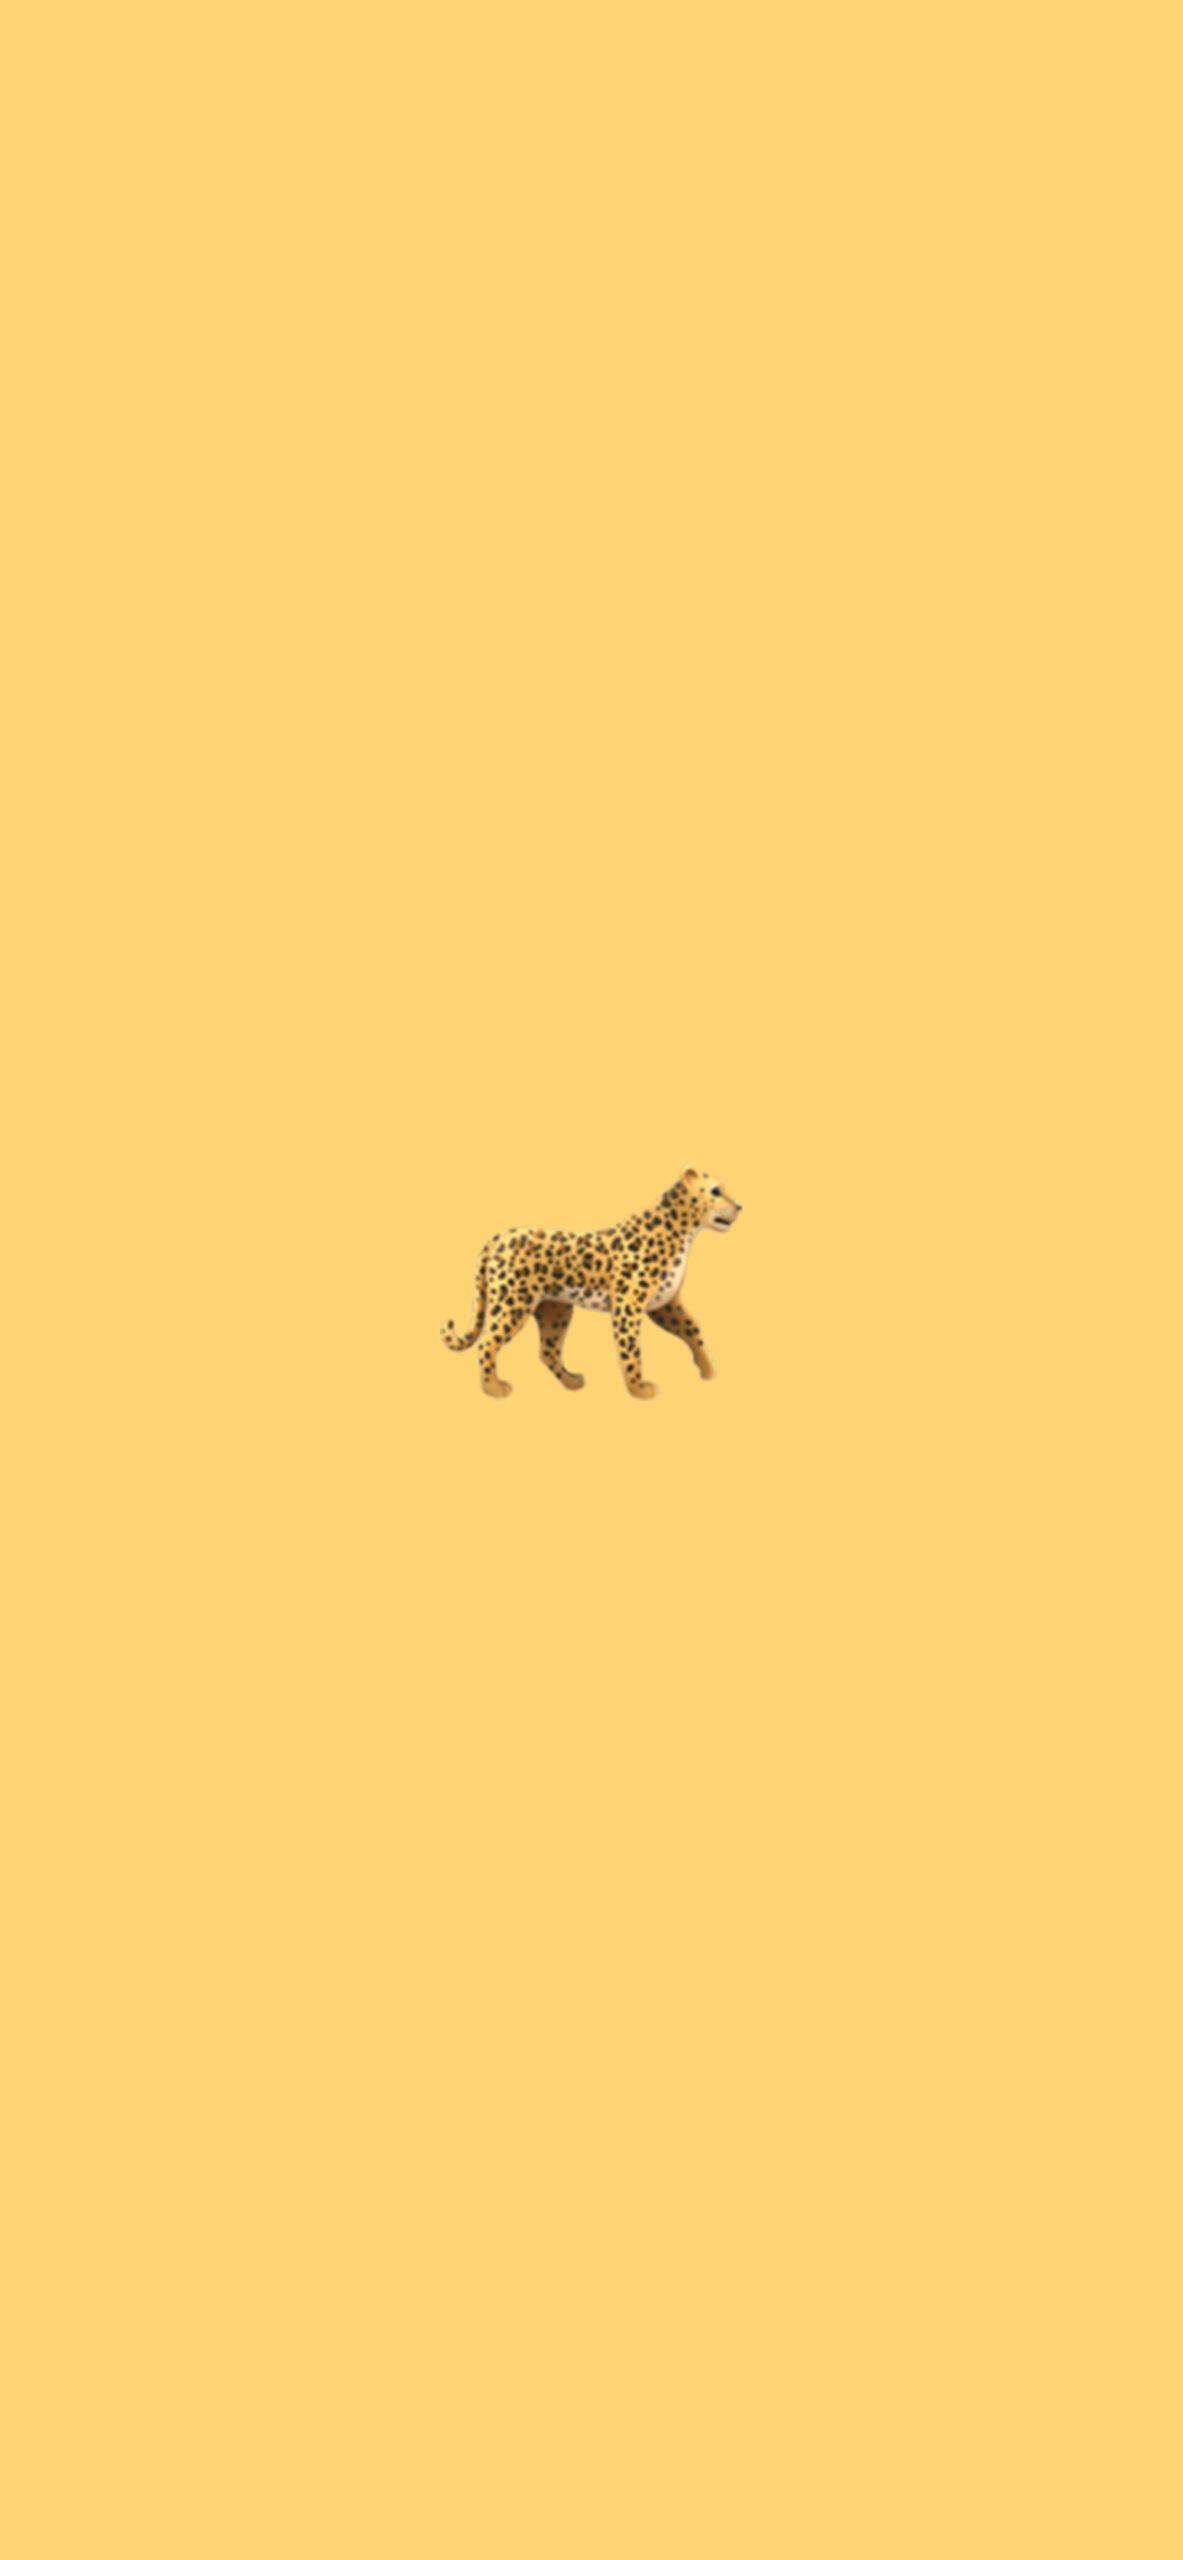  Leopardenmuster Hintergrundbild 1183x2560. Minimalist Emoji Wallpaper w Black Cat, Tiger & Leopard